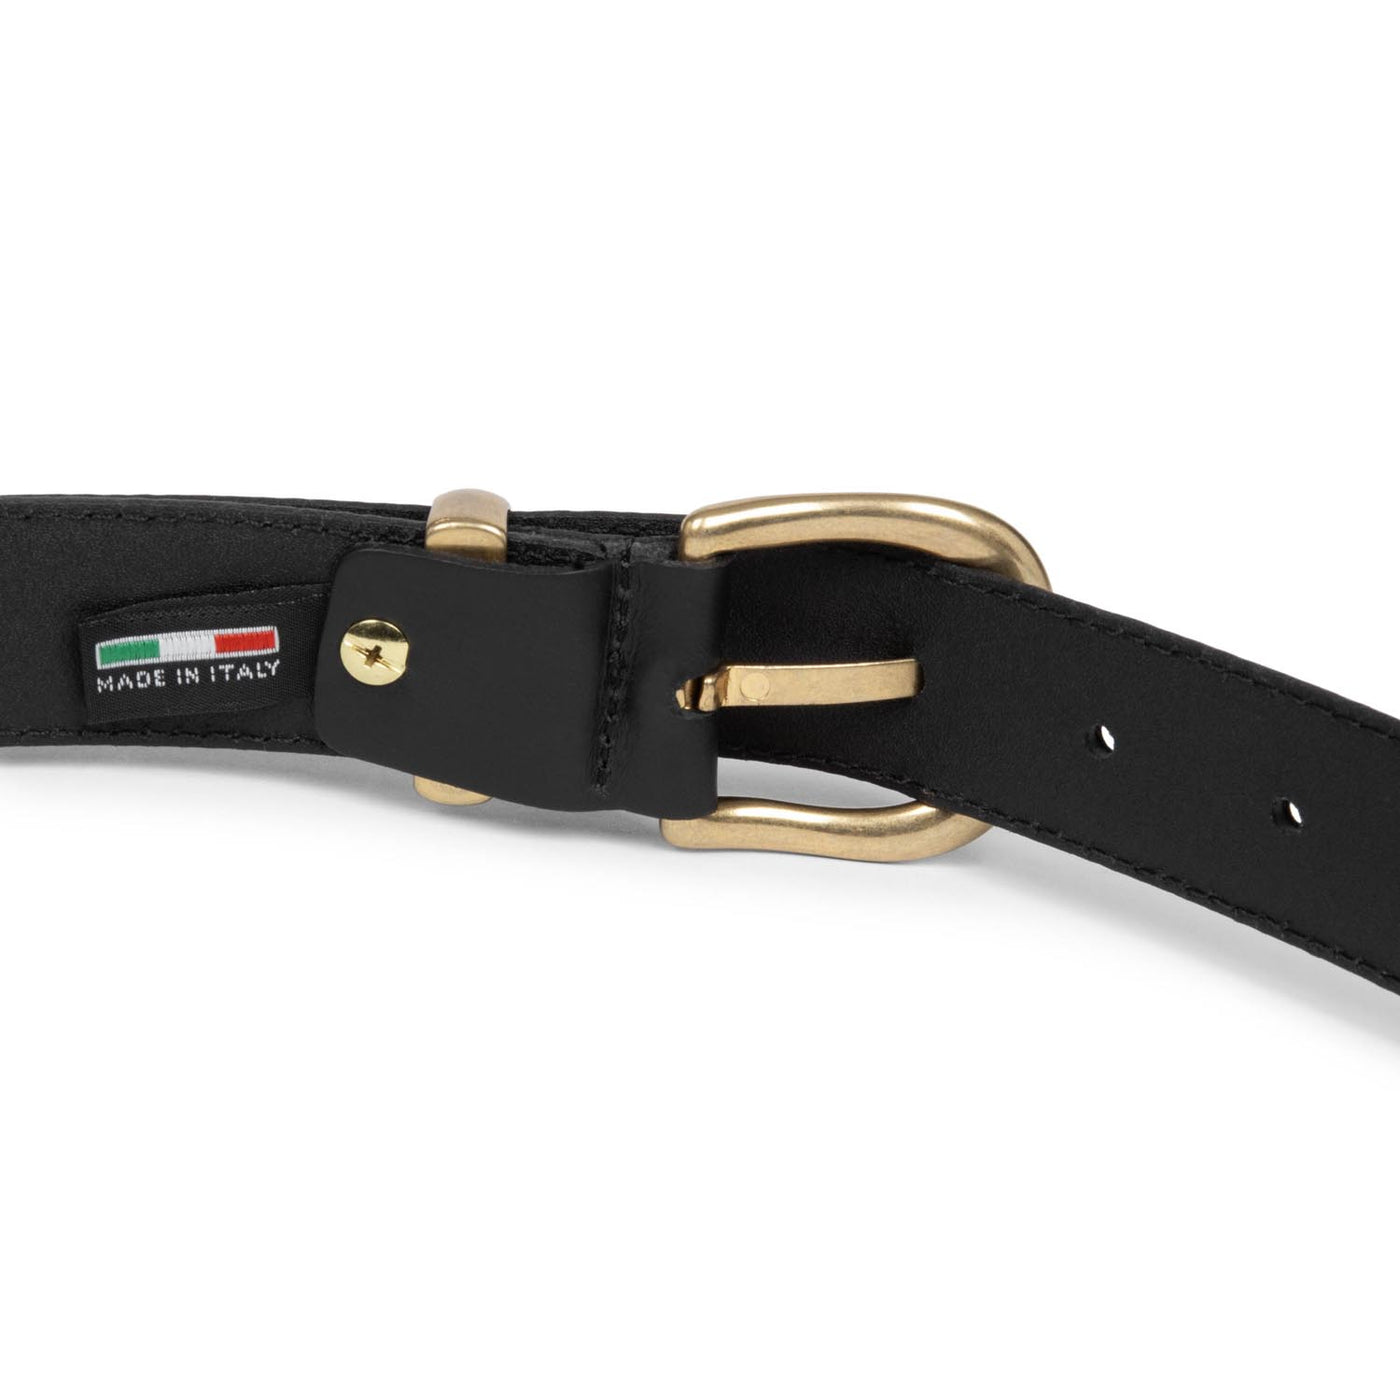 belt - ceinture cuir lisse femme #couleur_noir